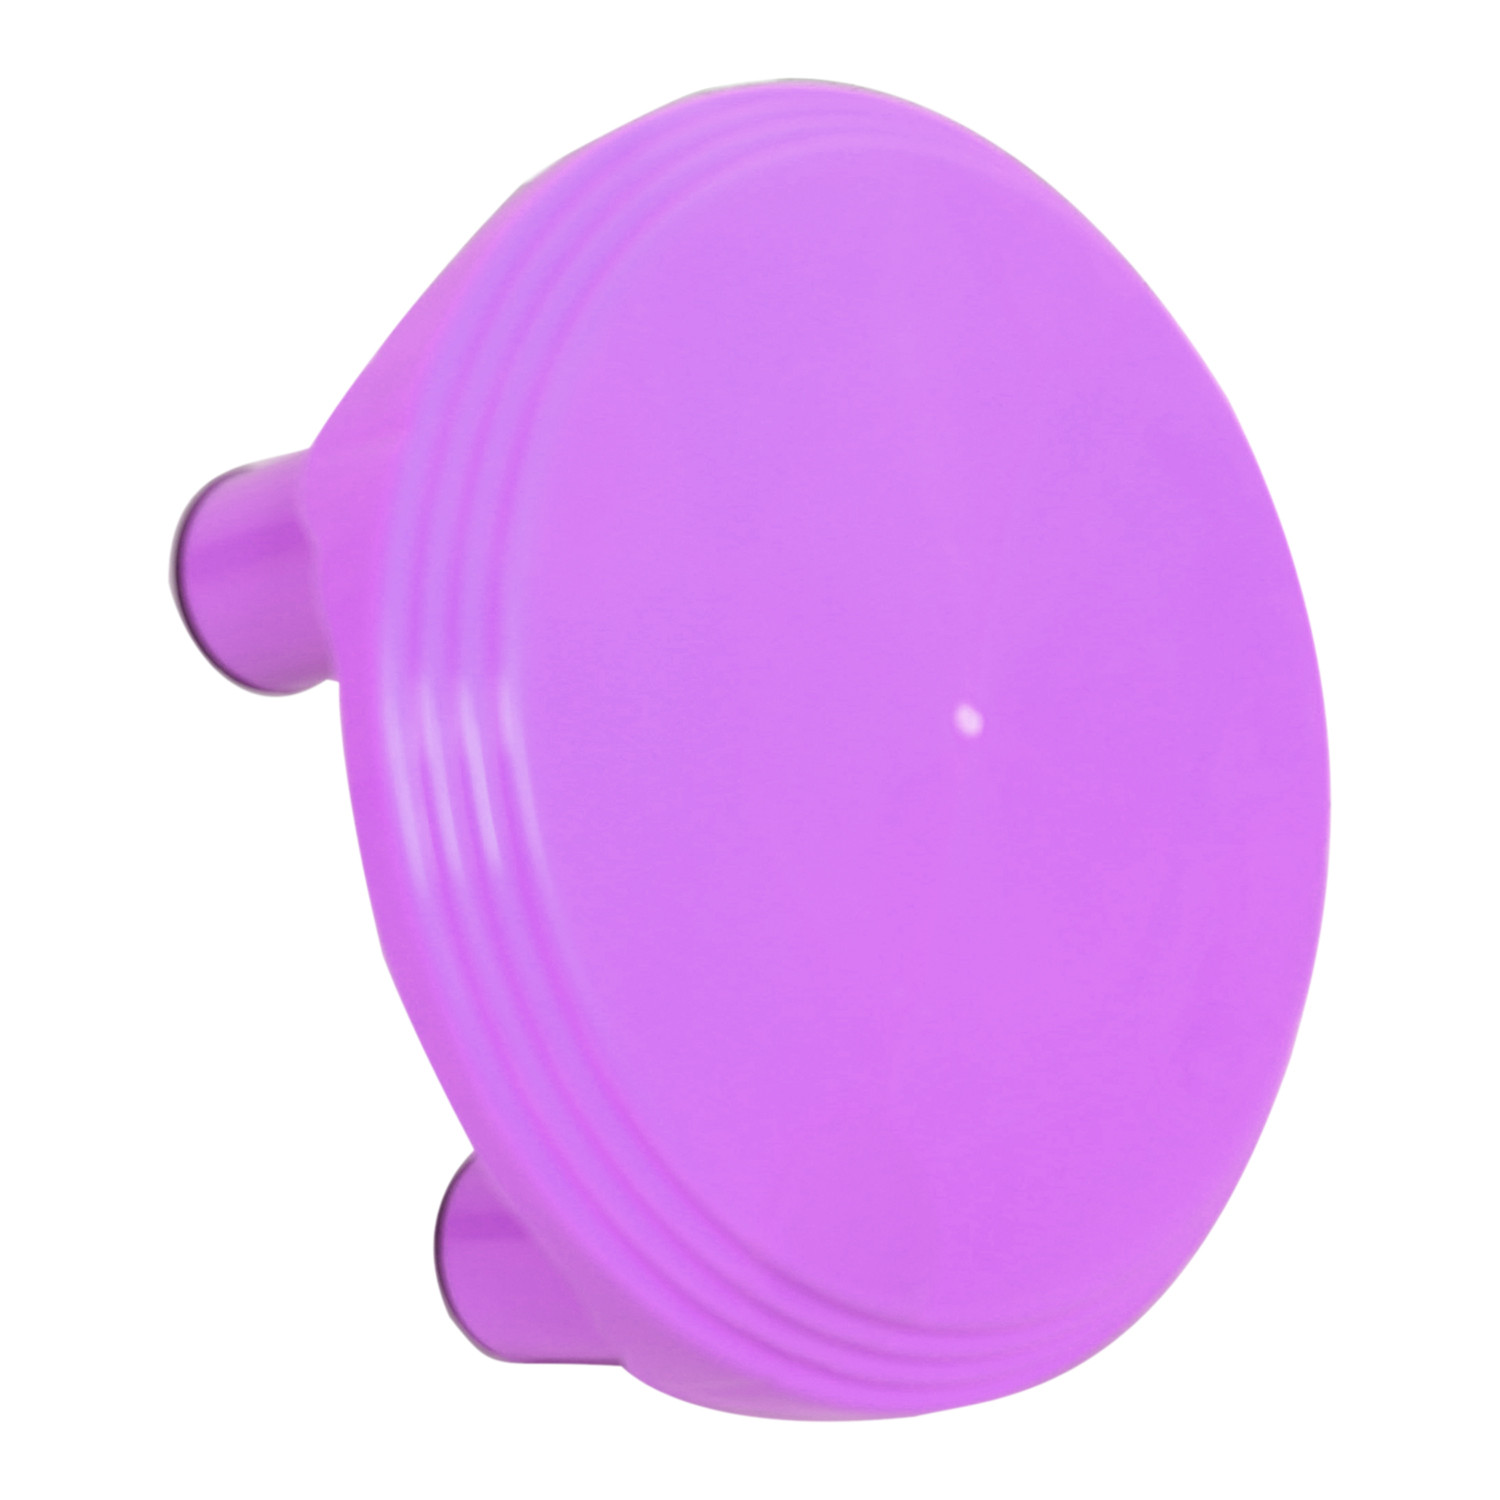 Kuber Industries Bathroom Stool|Plastic Stool|Anti-slip Bathing Stool|Stool for Senior Citizen|Patla for Bathroom|PINK